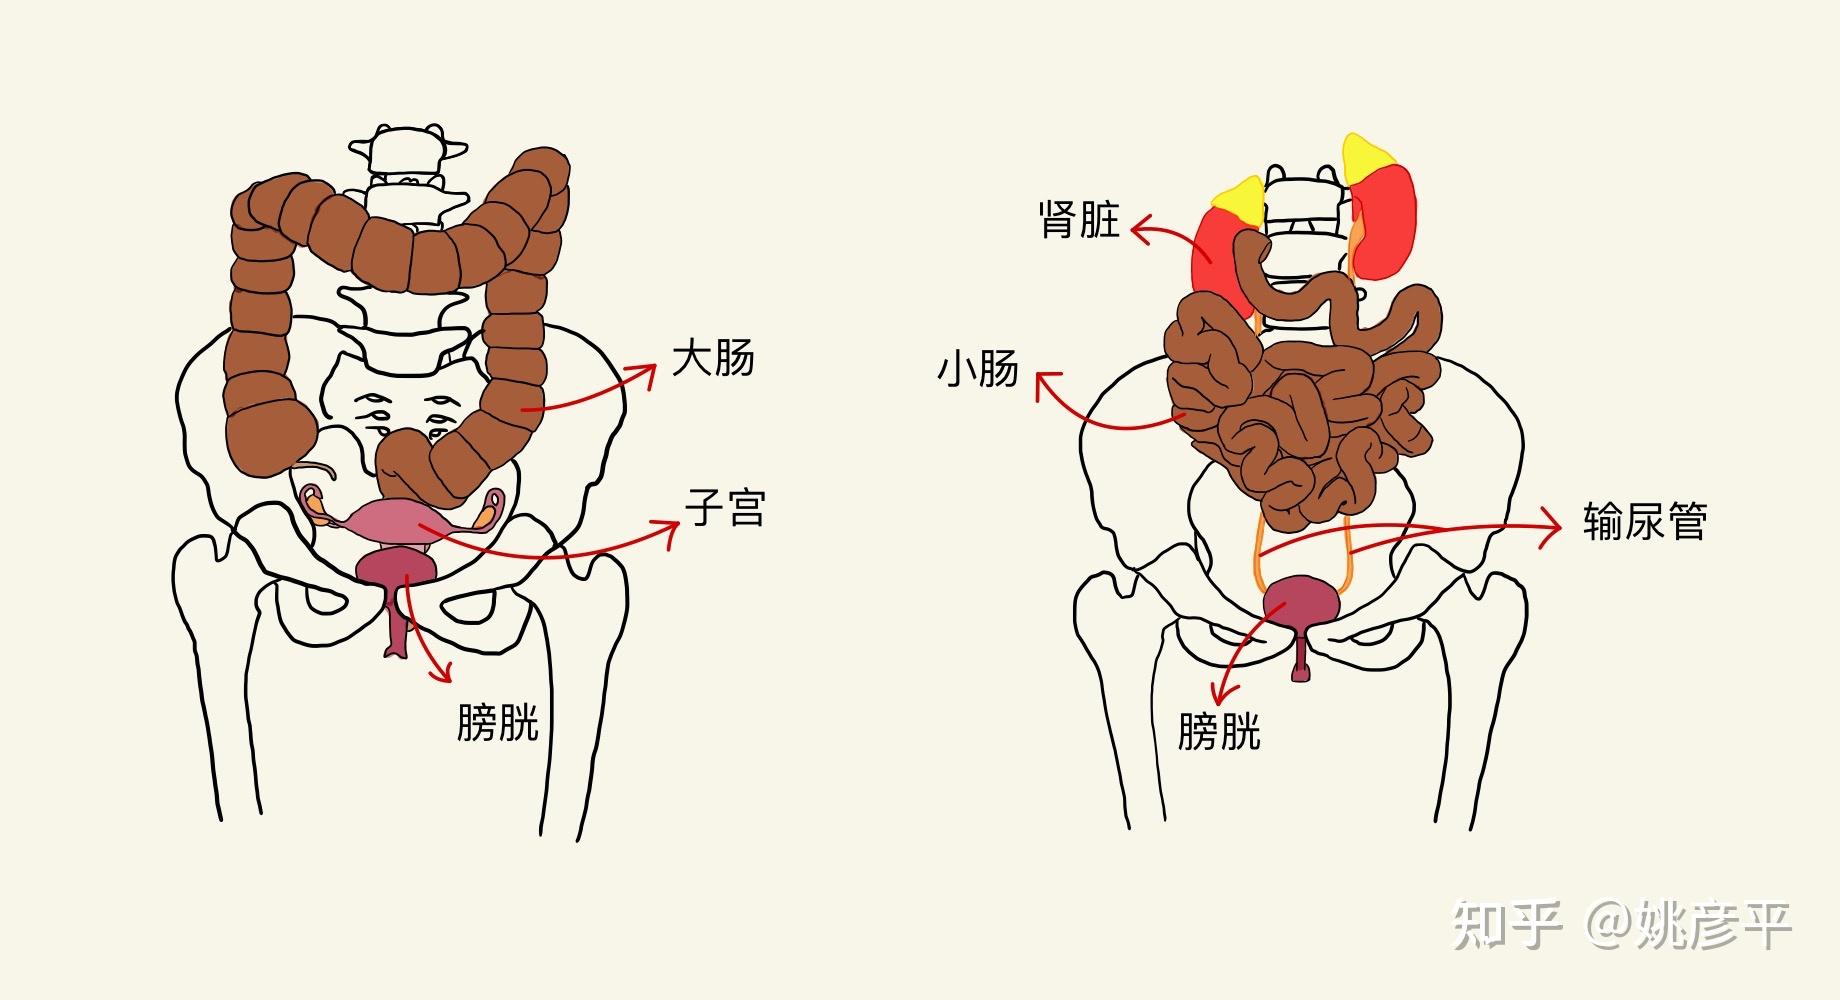 女性肚子下腹部结构图图片